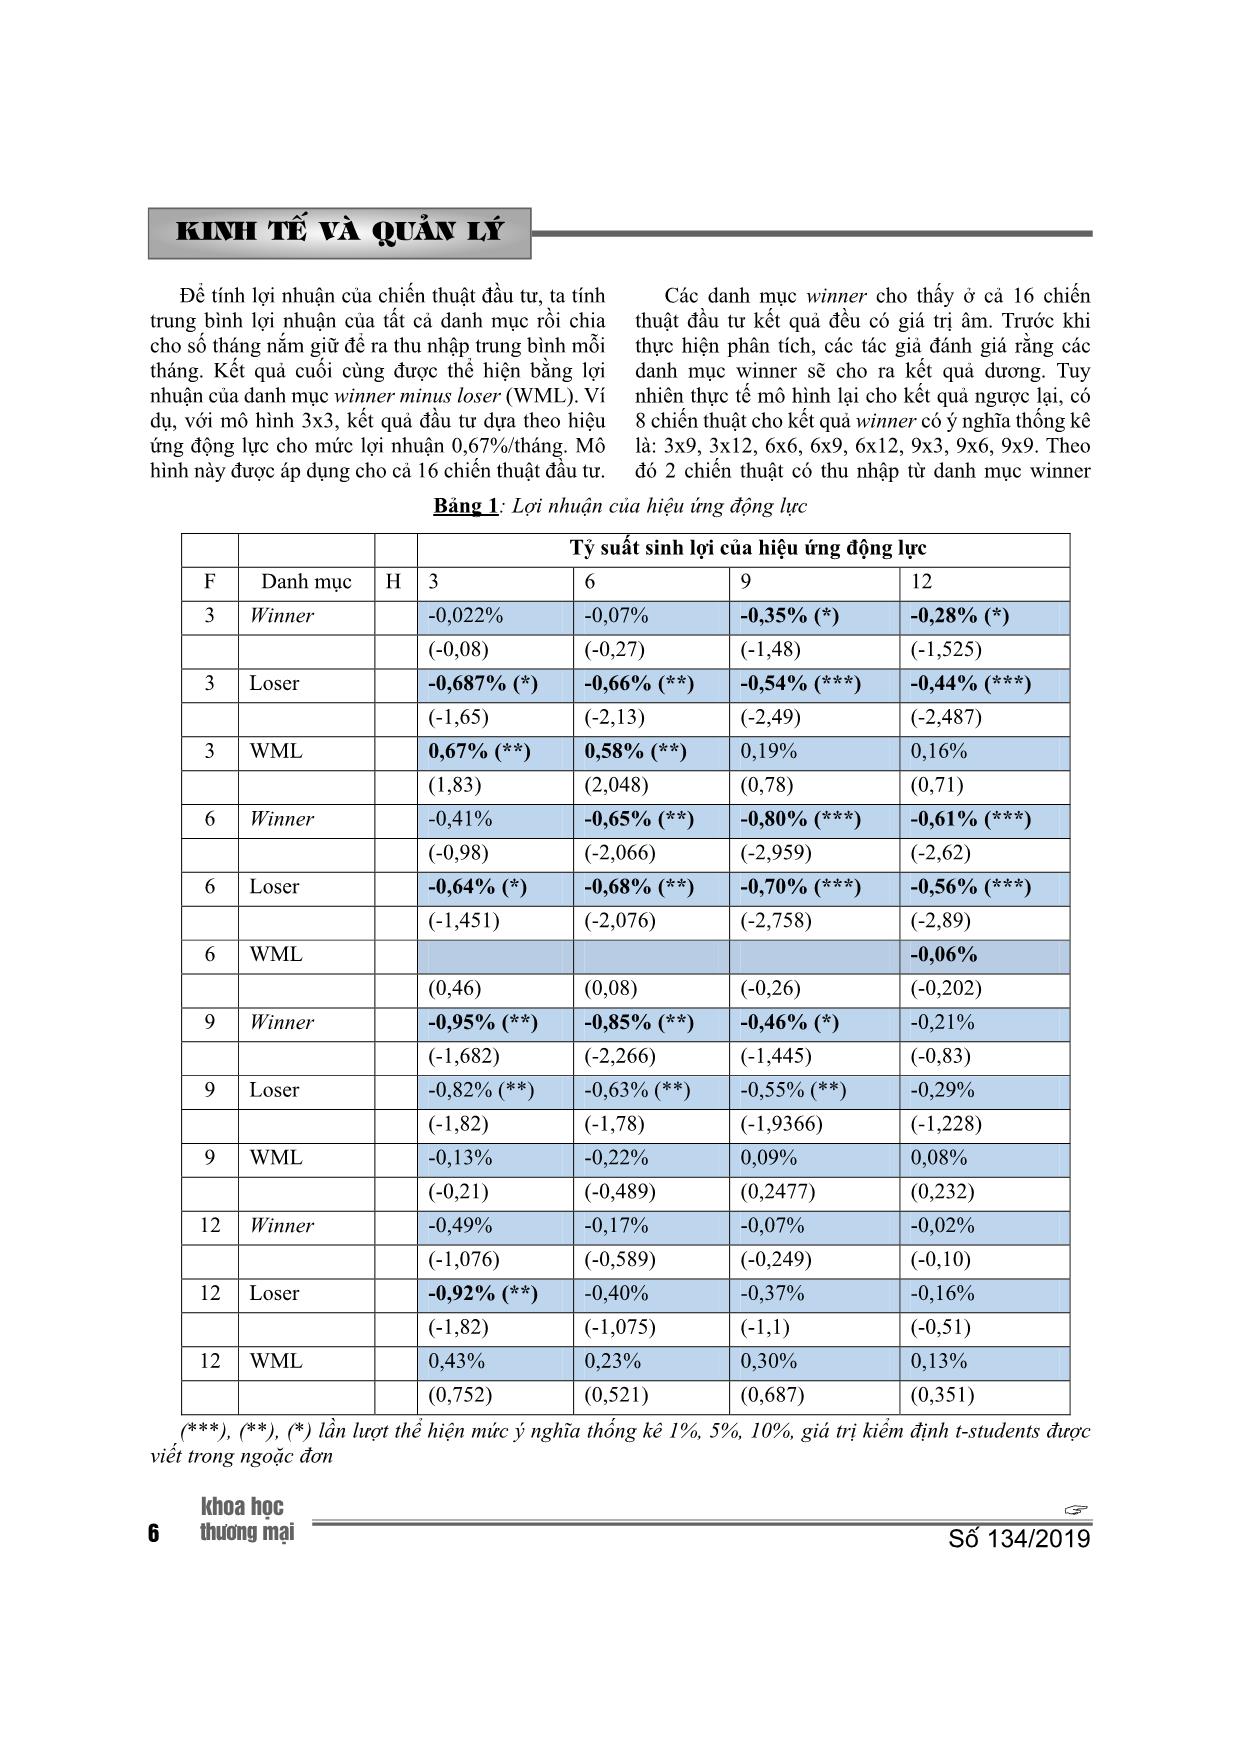 Hiệu ứng động lực trên thị trường chứng khoán Việt Nam trang 5